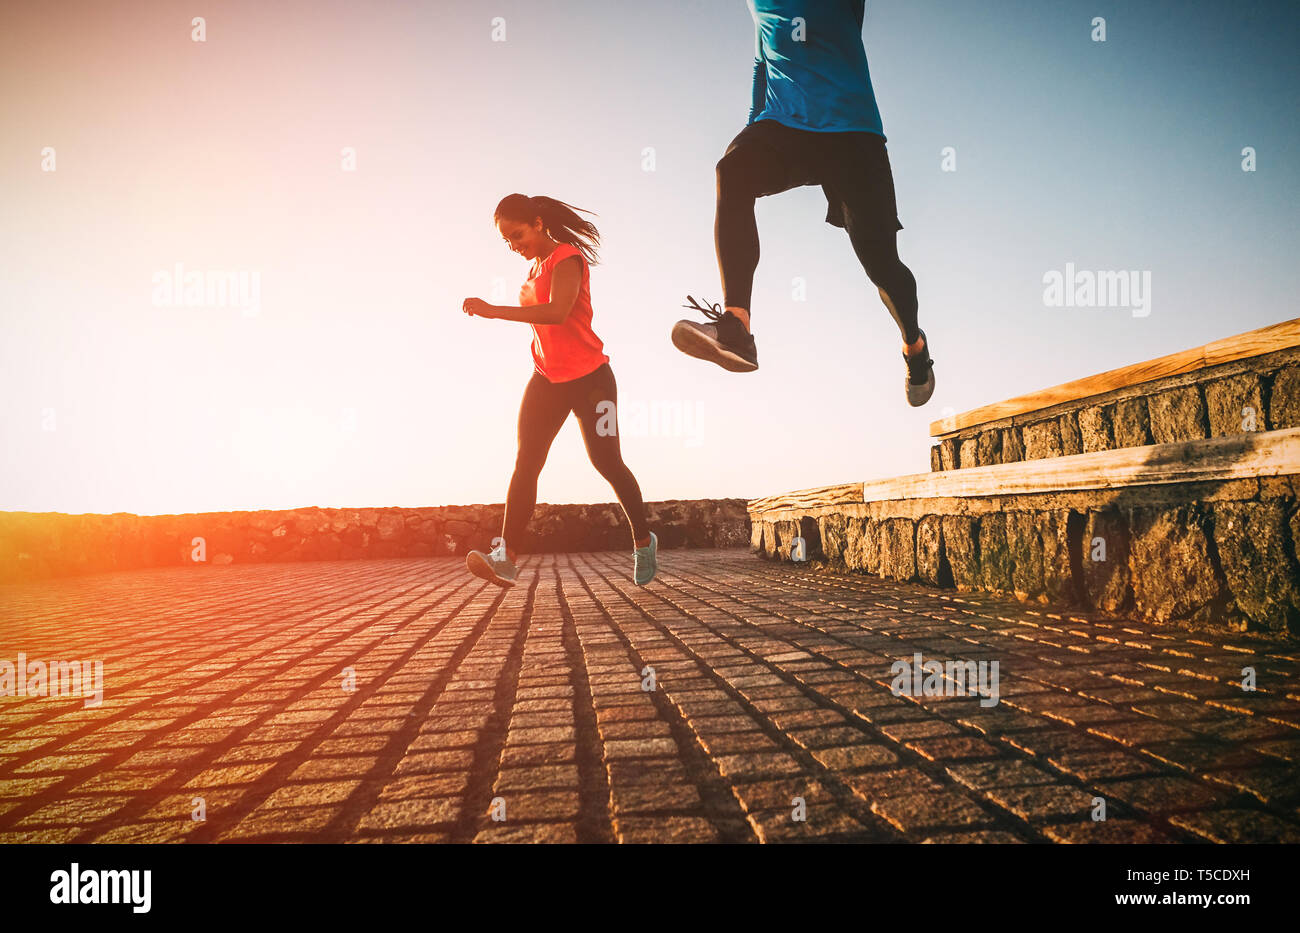 Montare la salute coppia giovane correndo insieme durante un magnifico tramonto - Atletica amici facendo sport outdoor Foto Stock